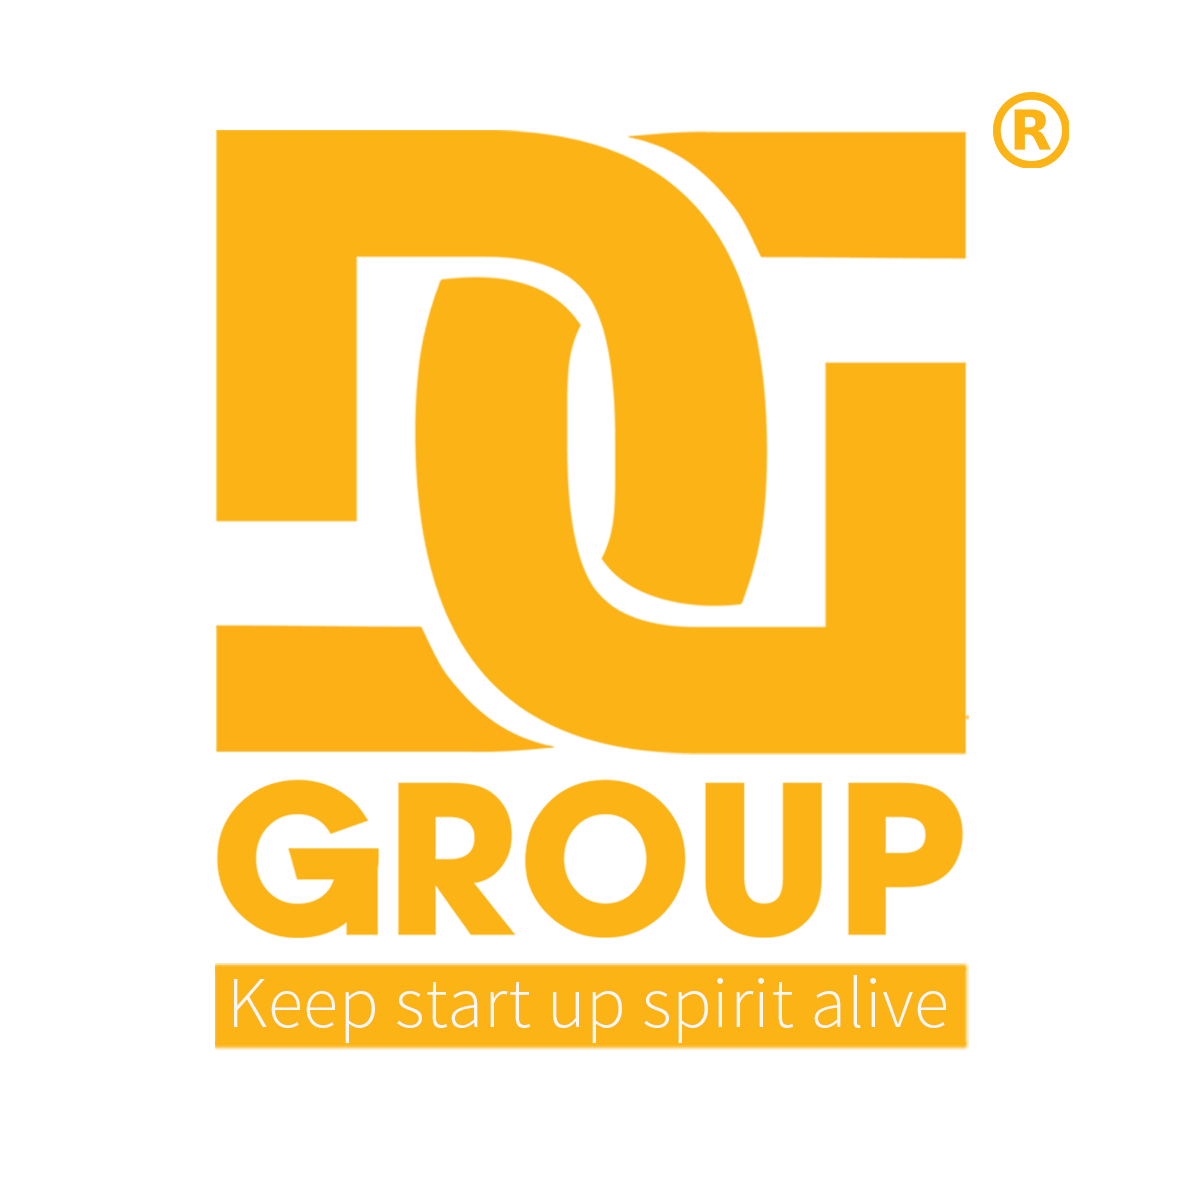 Khóa nghiệp vụ an toàn PCCC do DGroup Holdings phối hợp cùng Công An PCCC Quận Tân Bình